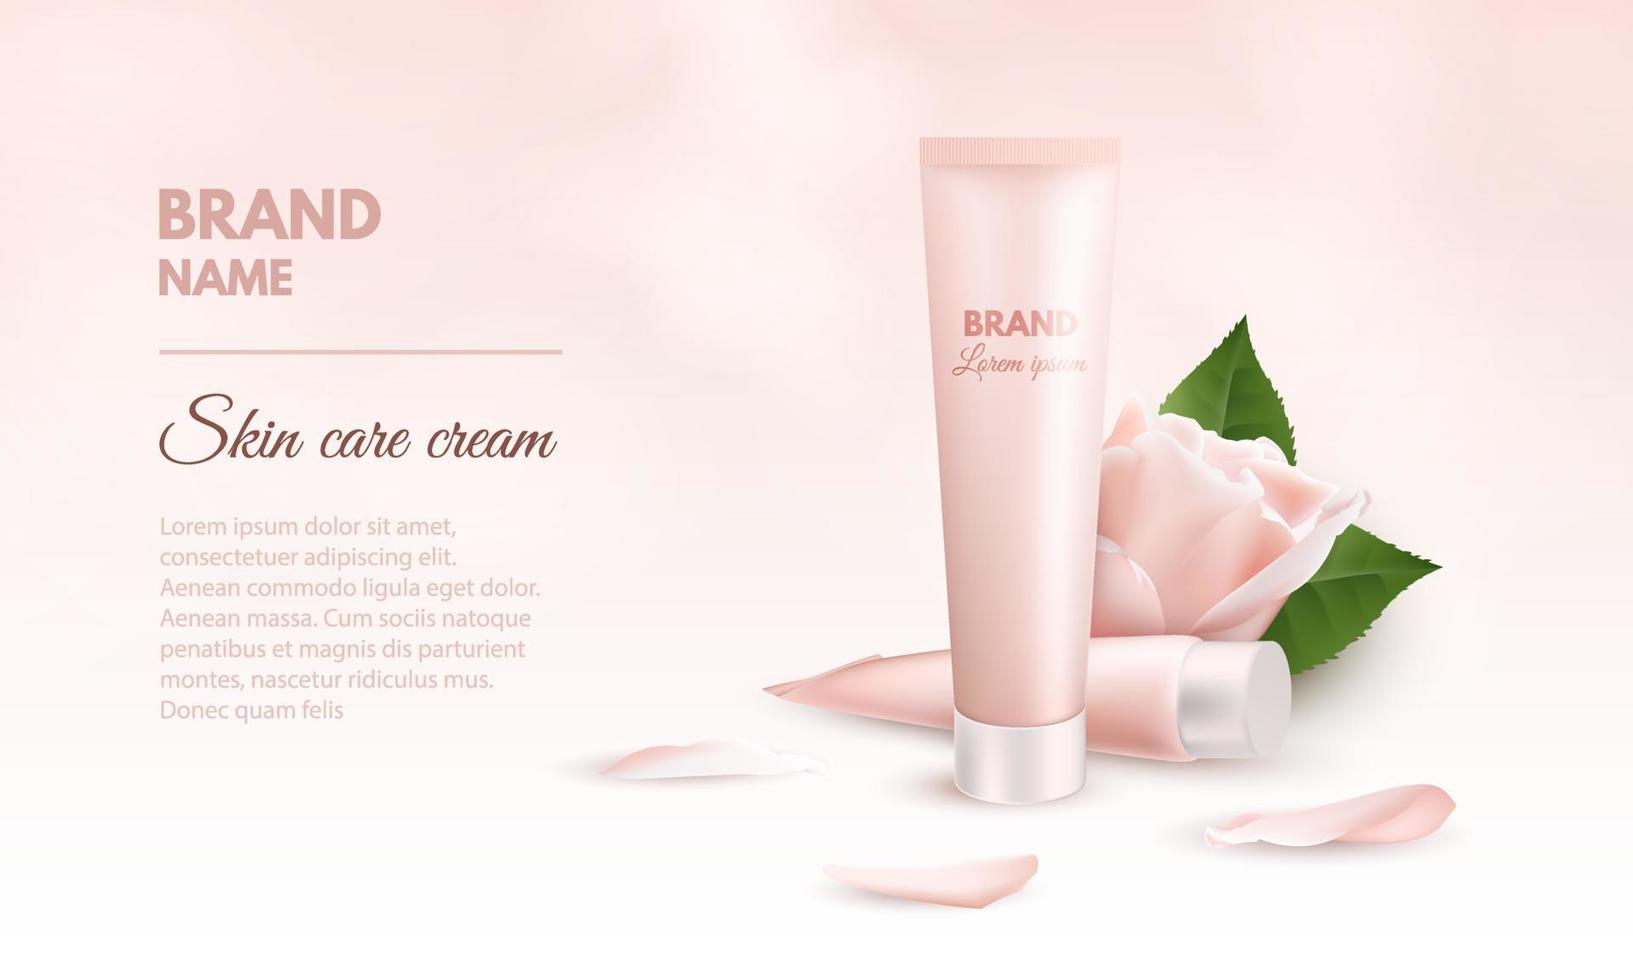 realistisk 3d-bannermall för hudvårdskräm. annonsförpackning mockup för kosmetiska och medicinska produkter med två tuber grädde, blomma och kronblad ros. vektor illustration